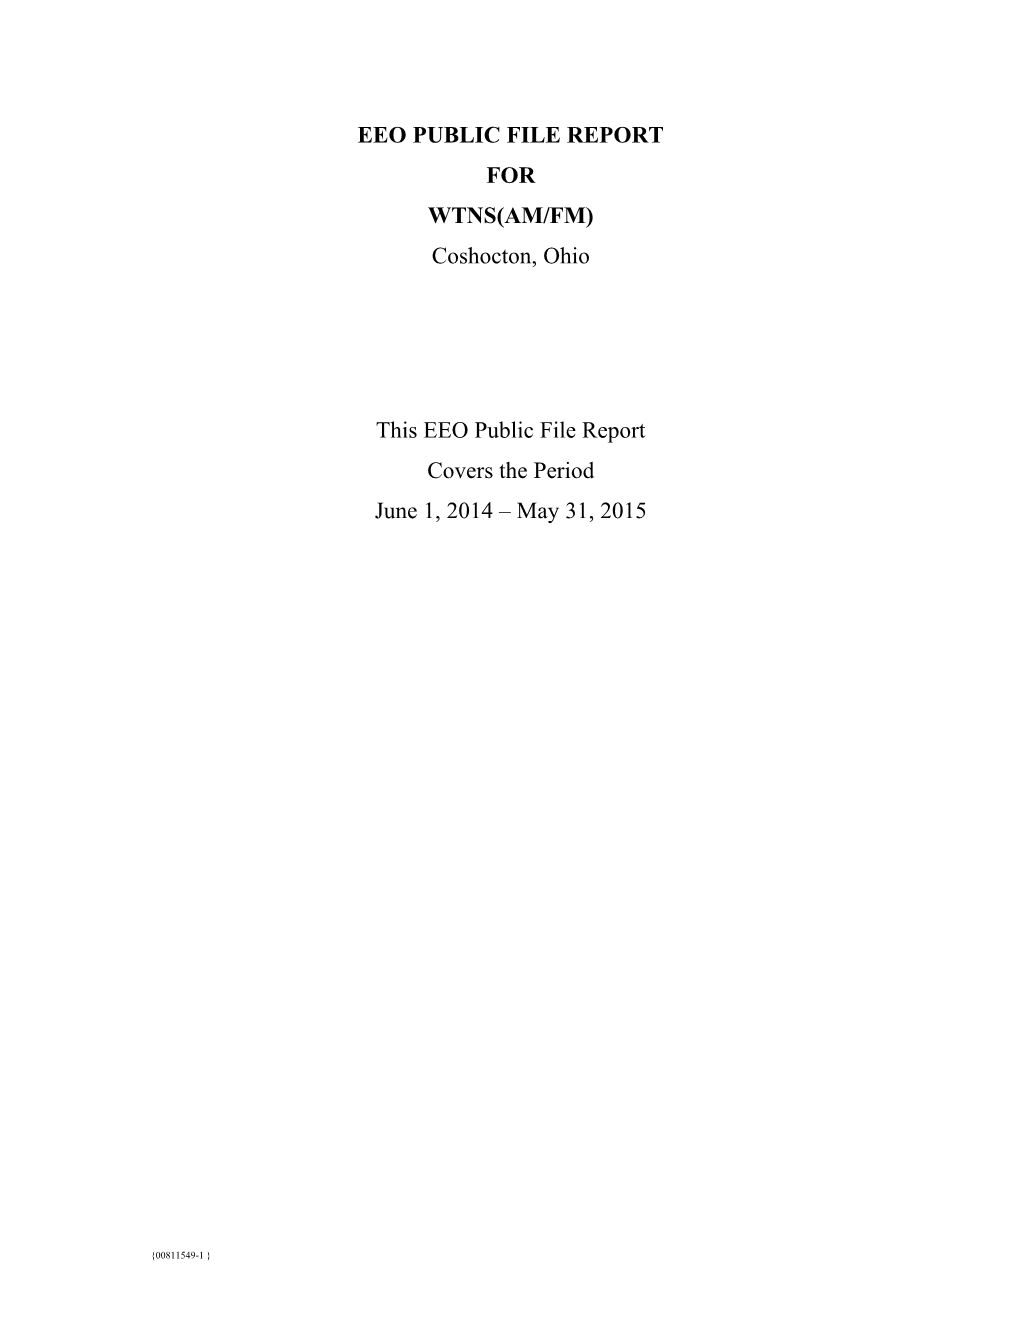 WTNS Public File Report 2014-2015 (00811549)